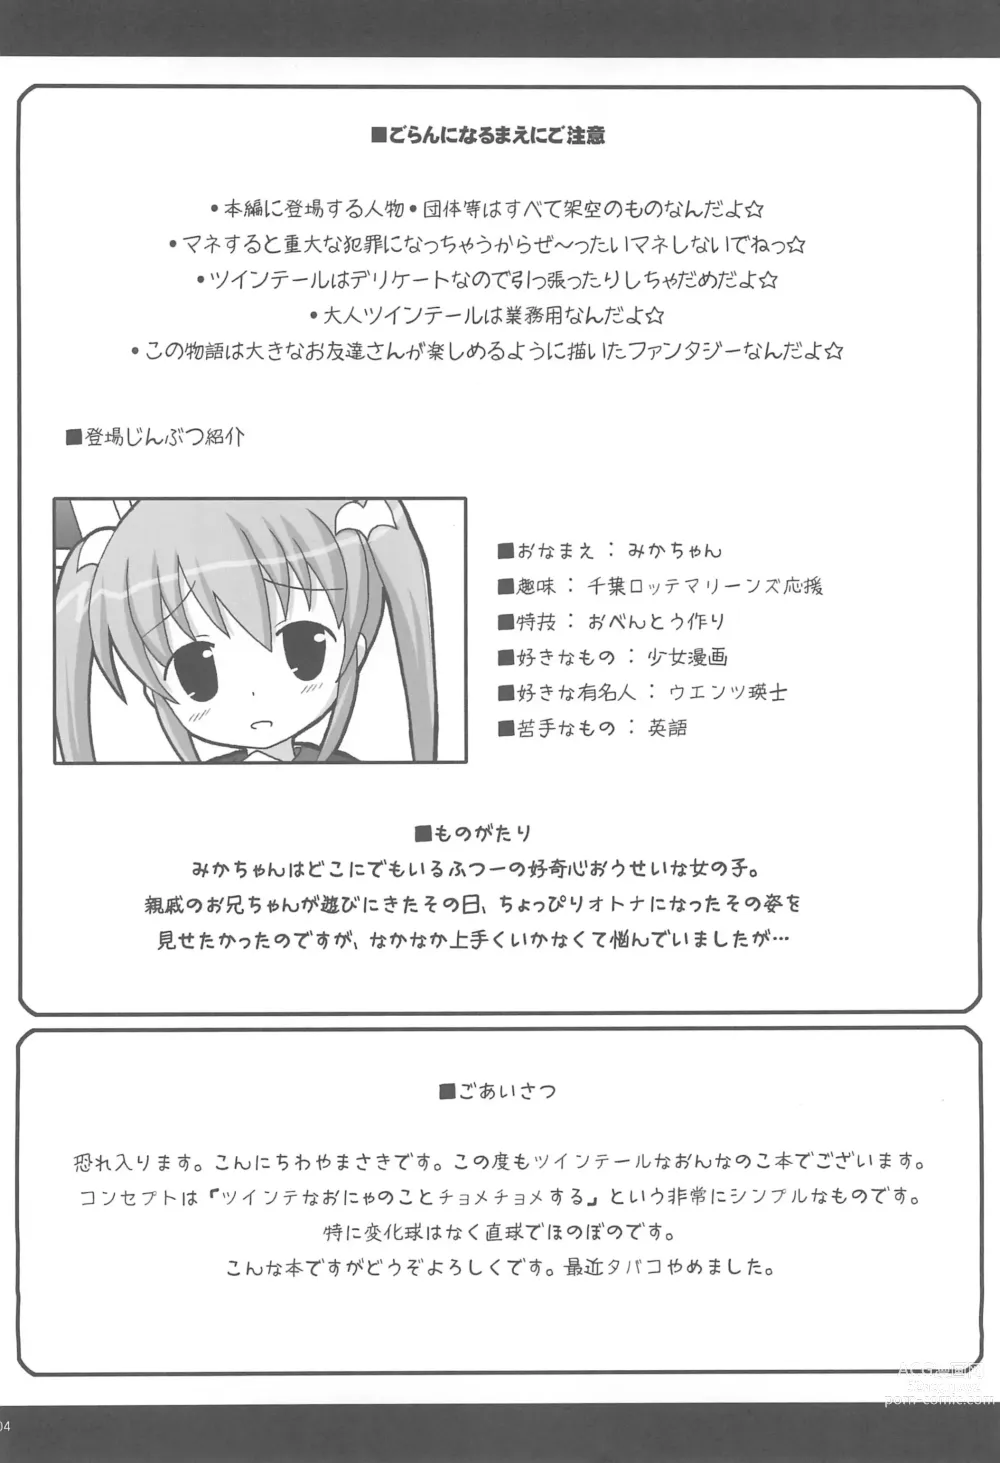 Page 6 of doujinshi Twintail na Onnanoko Hon 4.5.6 Tsumechaimashita.